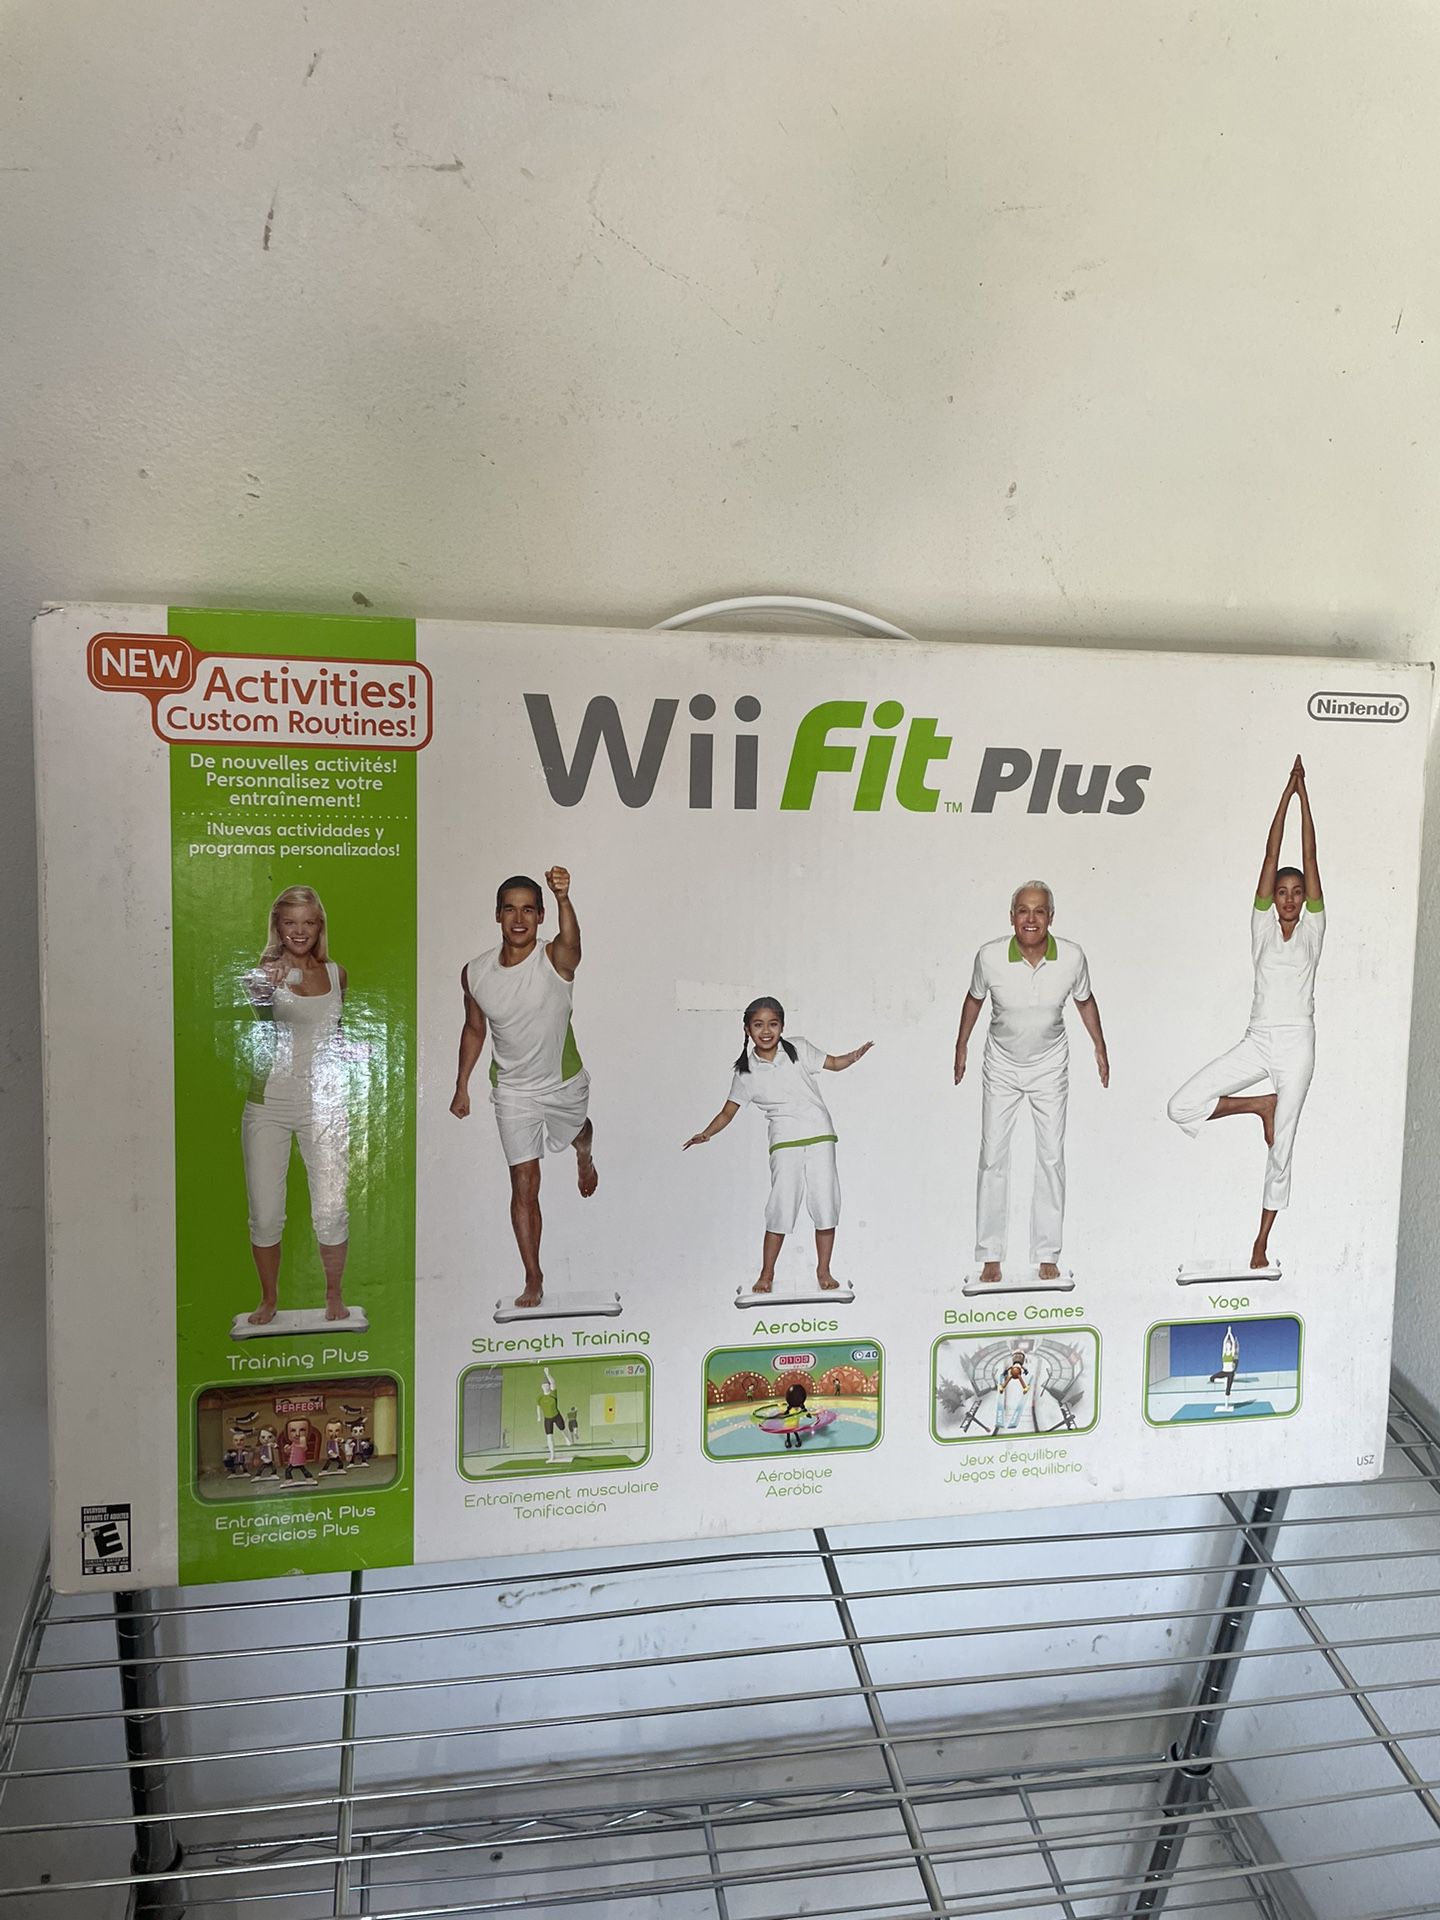 WiiFit Plus